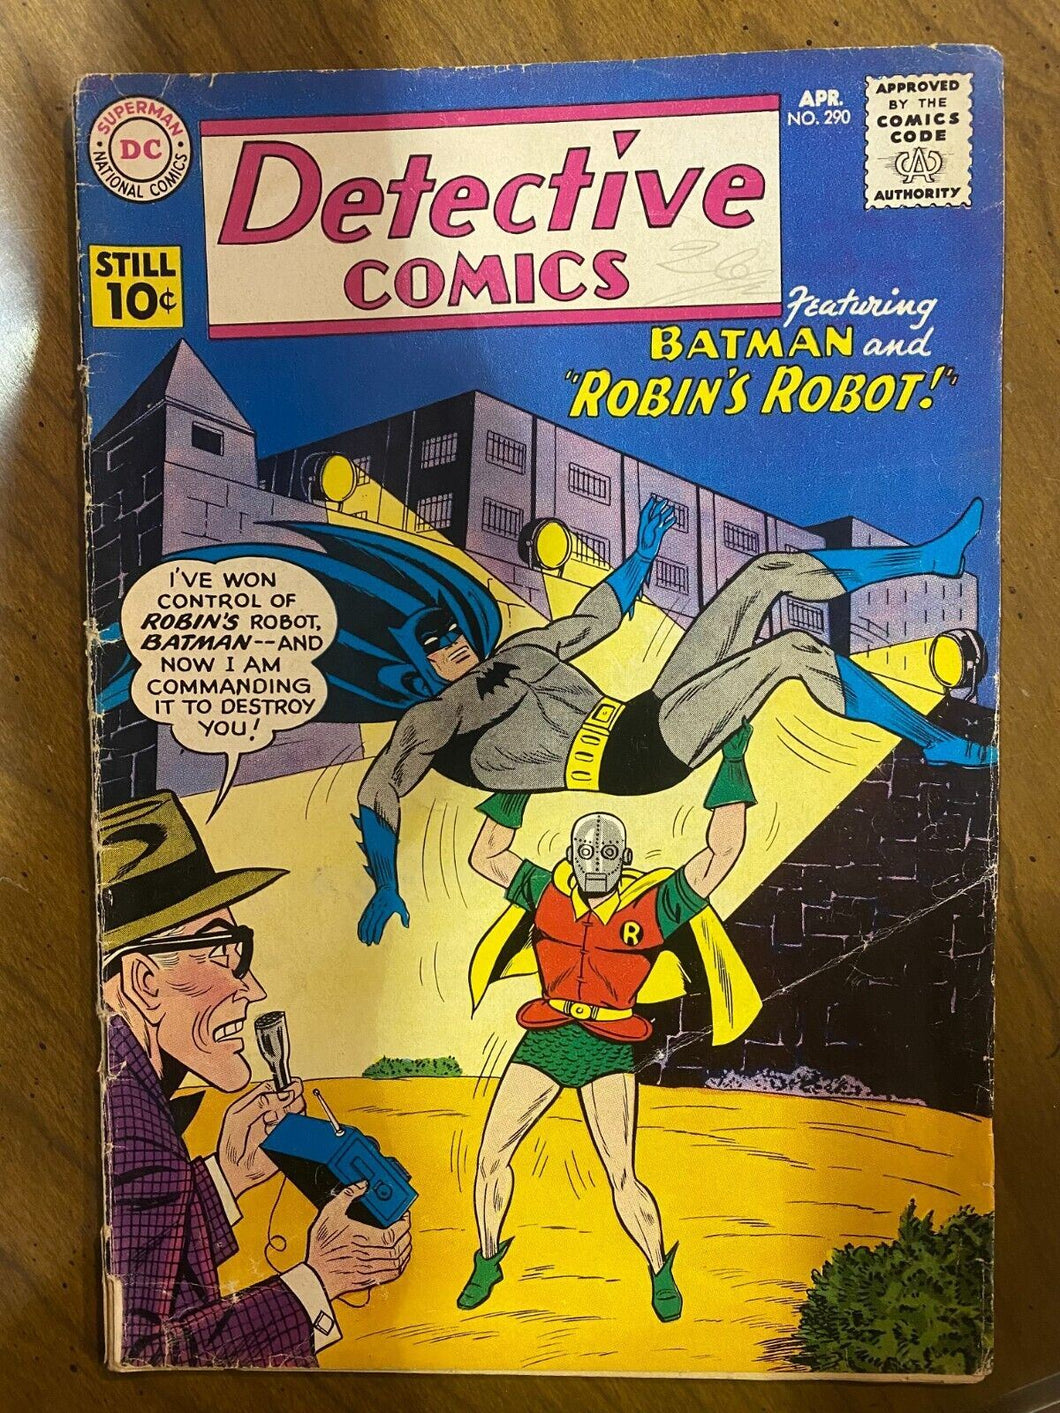 1961 April Detective Comics Vol 1 Issue 290